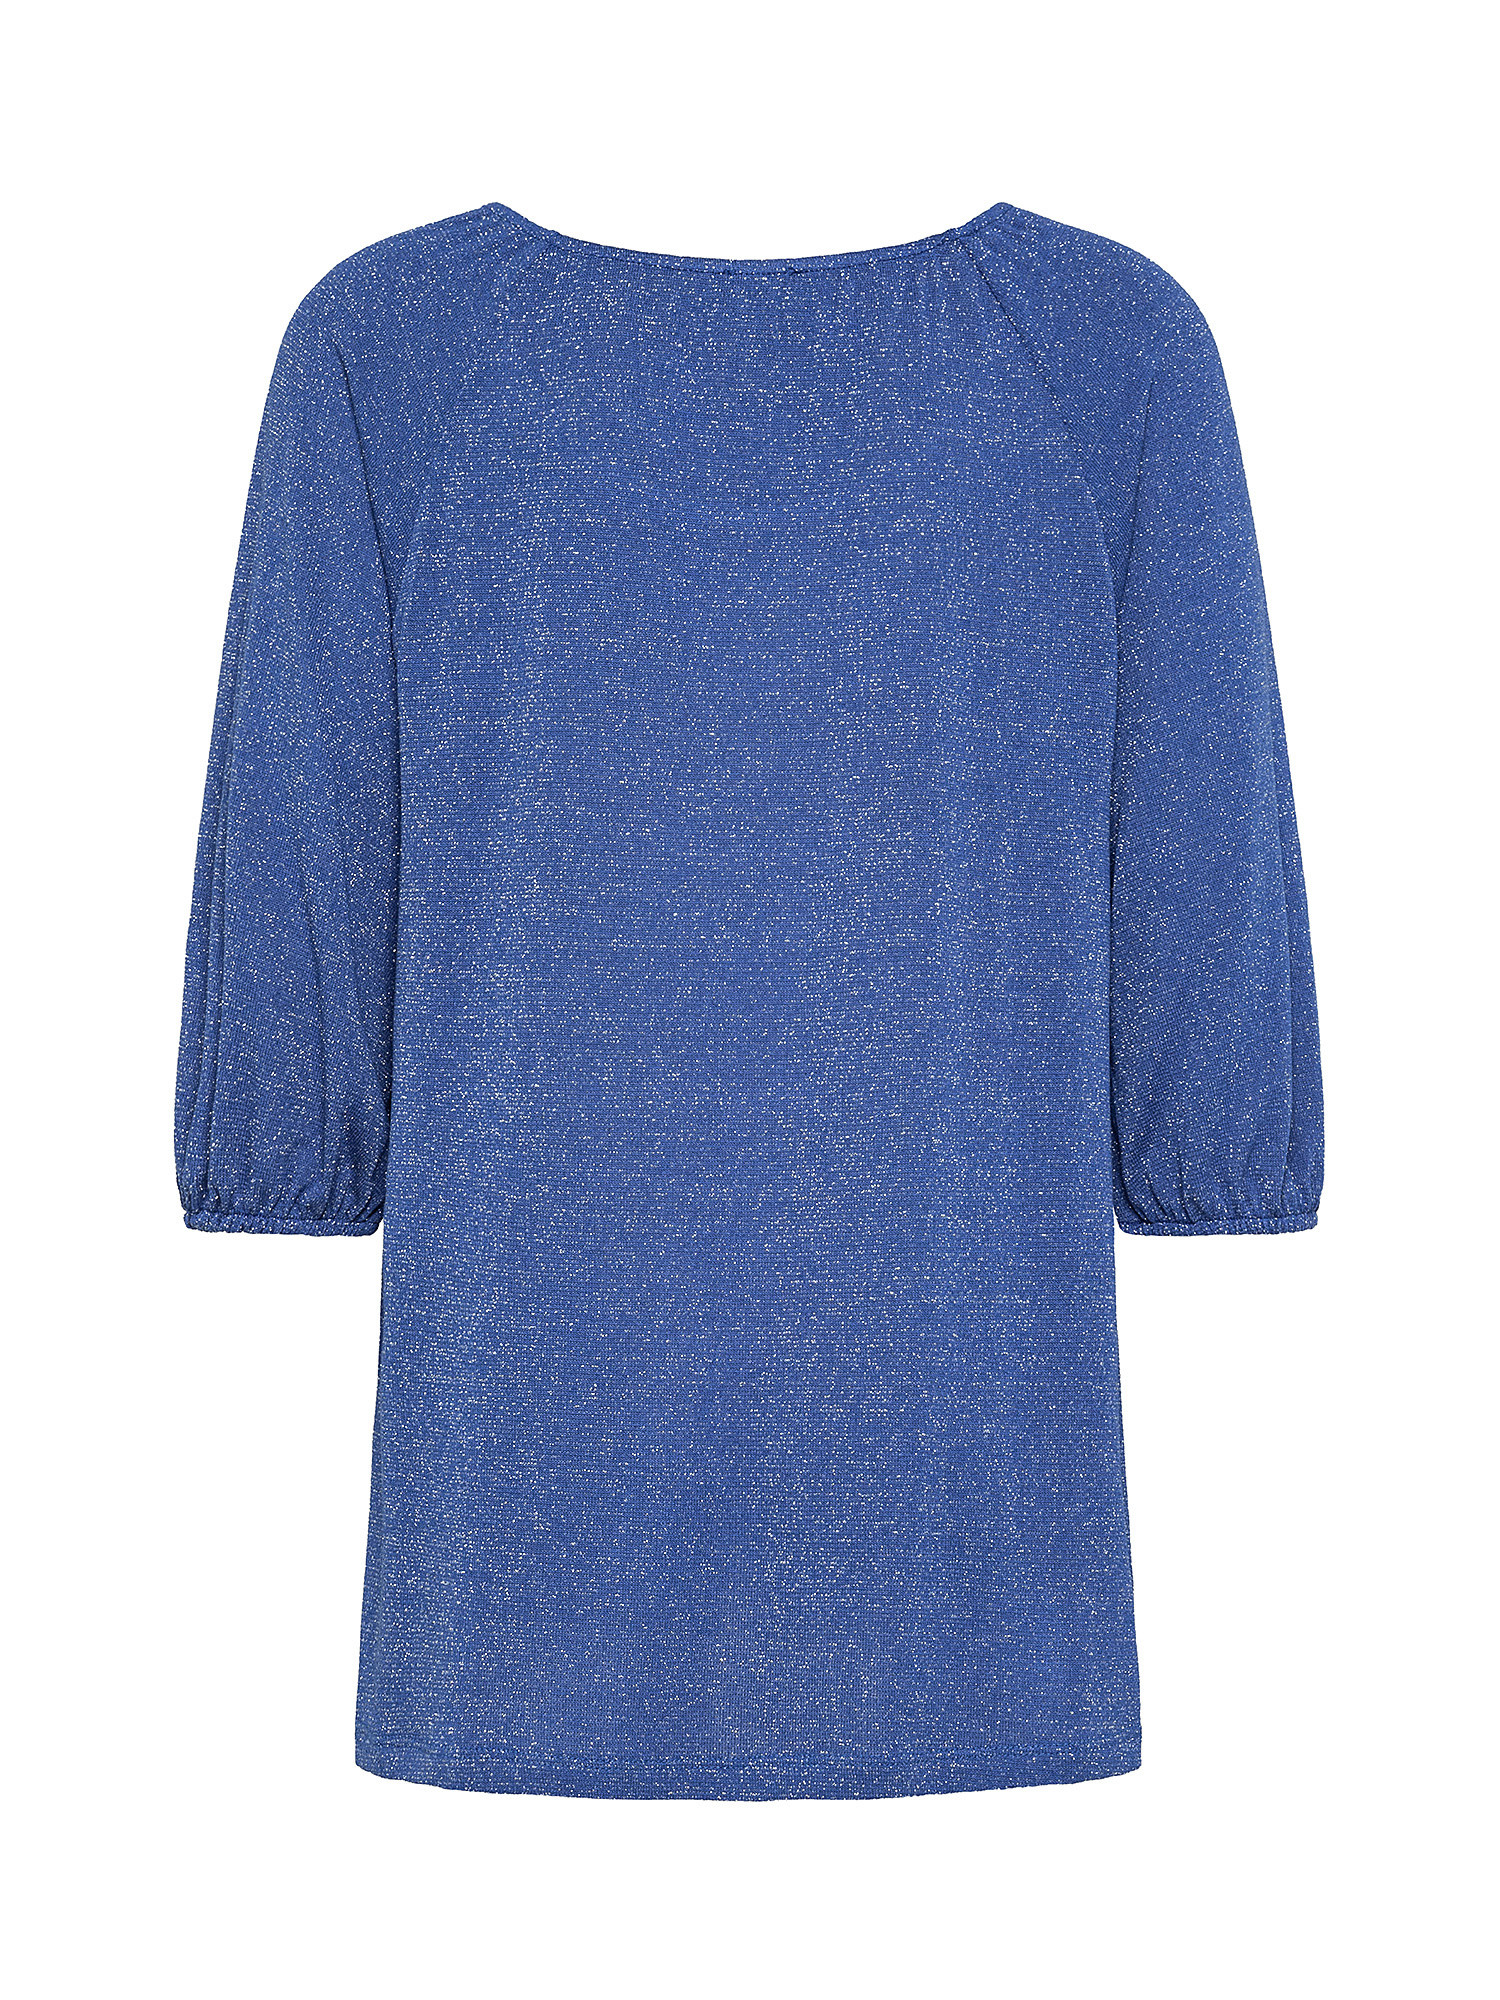 T-shirt con manica raglan, Blu royal, large image number 1